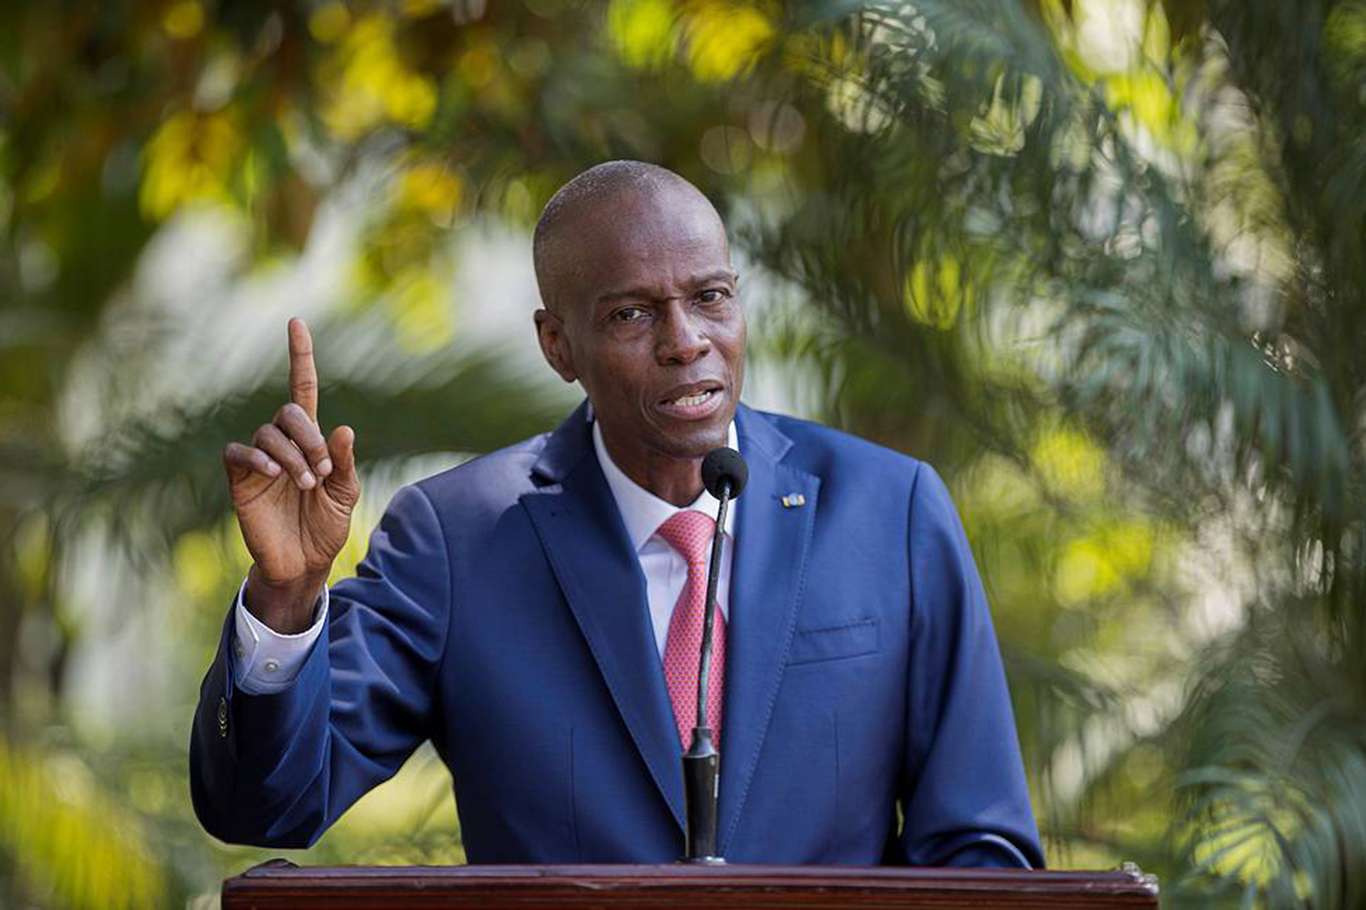 Moise'ye suikast: Emri Haitili bir yetkili verdi iddiası